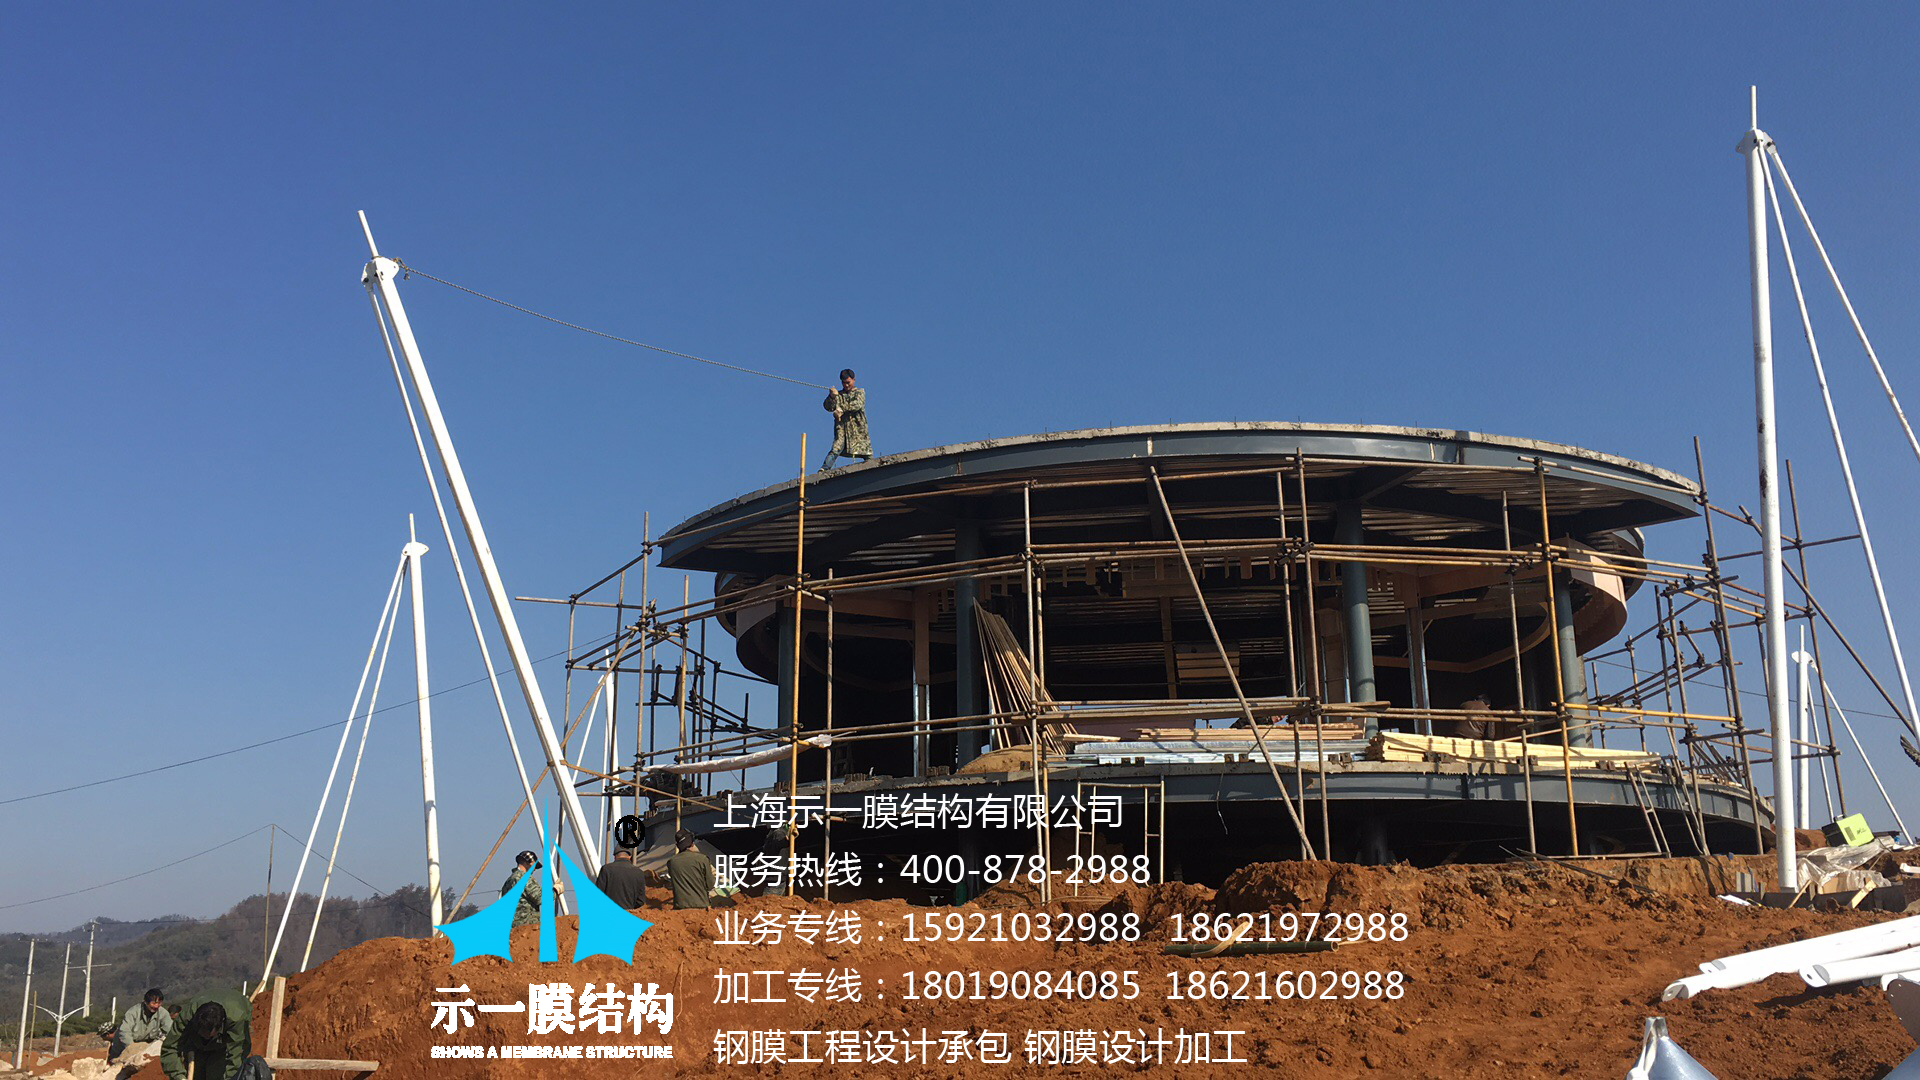 上海示一膜结构诸暨度假山庄膜结构遮阳帐篷-第三部分